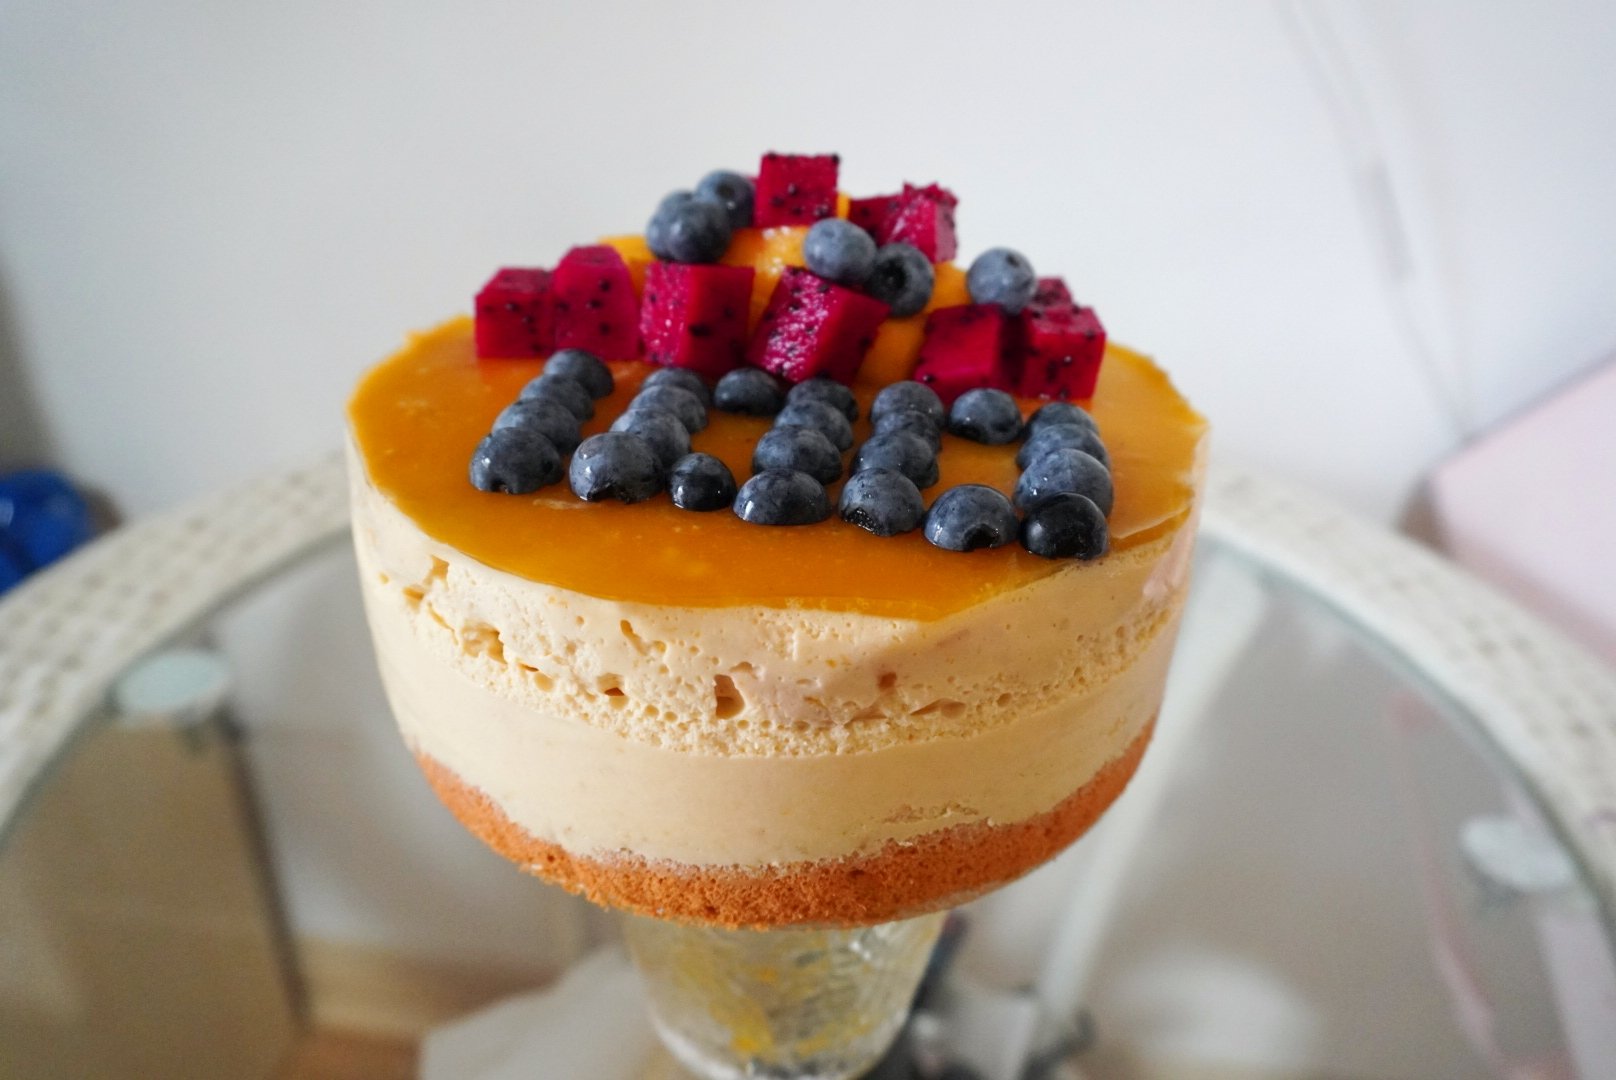 芒果/火龙果慕斯蛋糕——6寸 生日蛋糕，有蛋糕胚夹层，水果慕斯